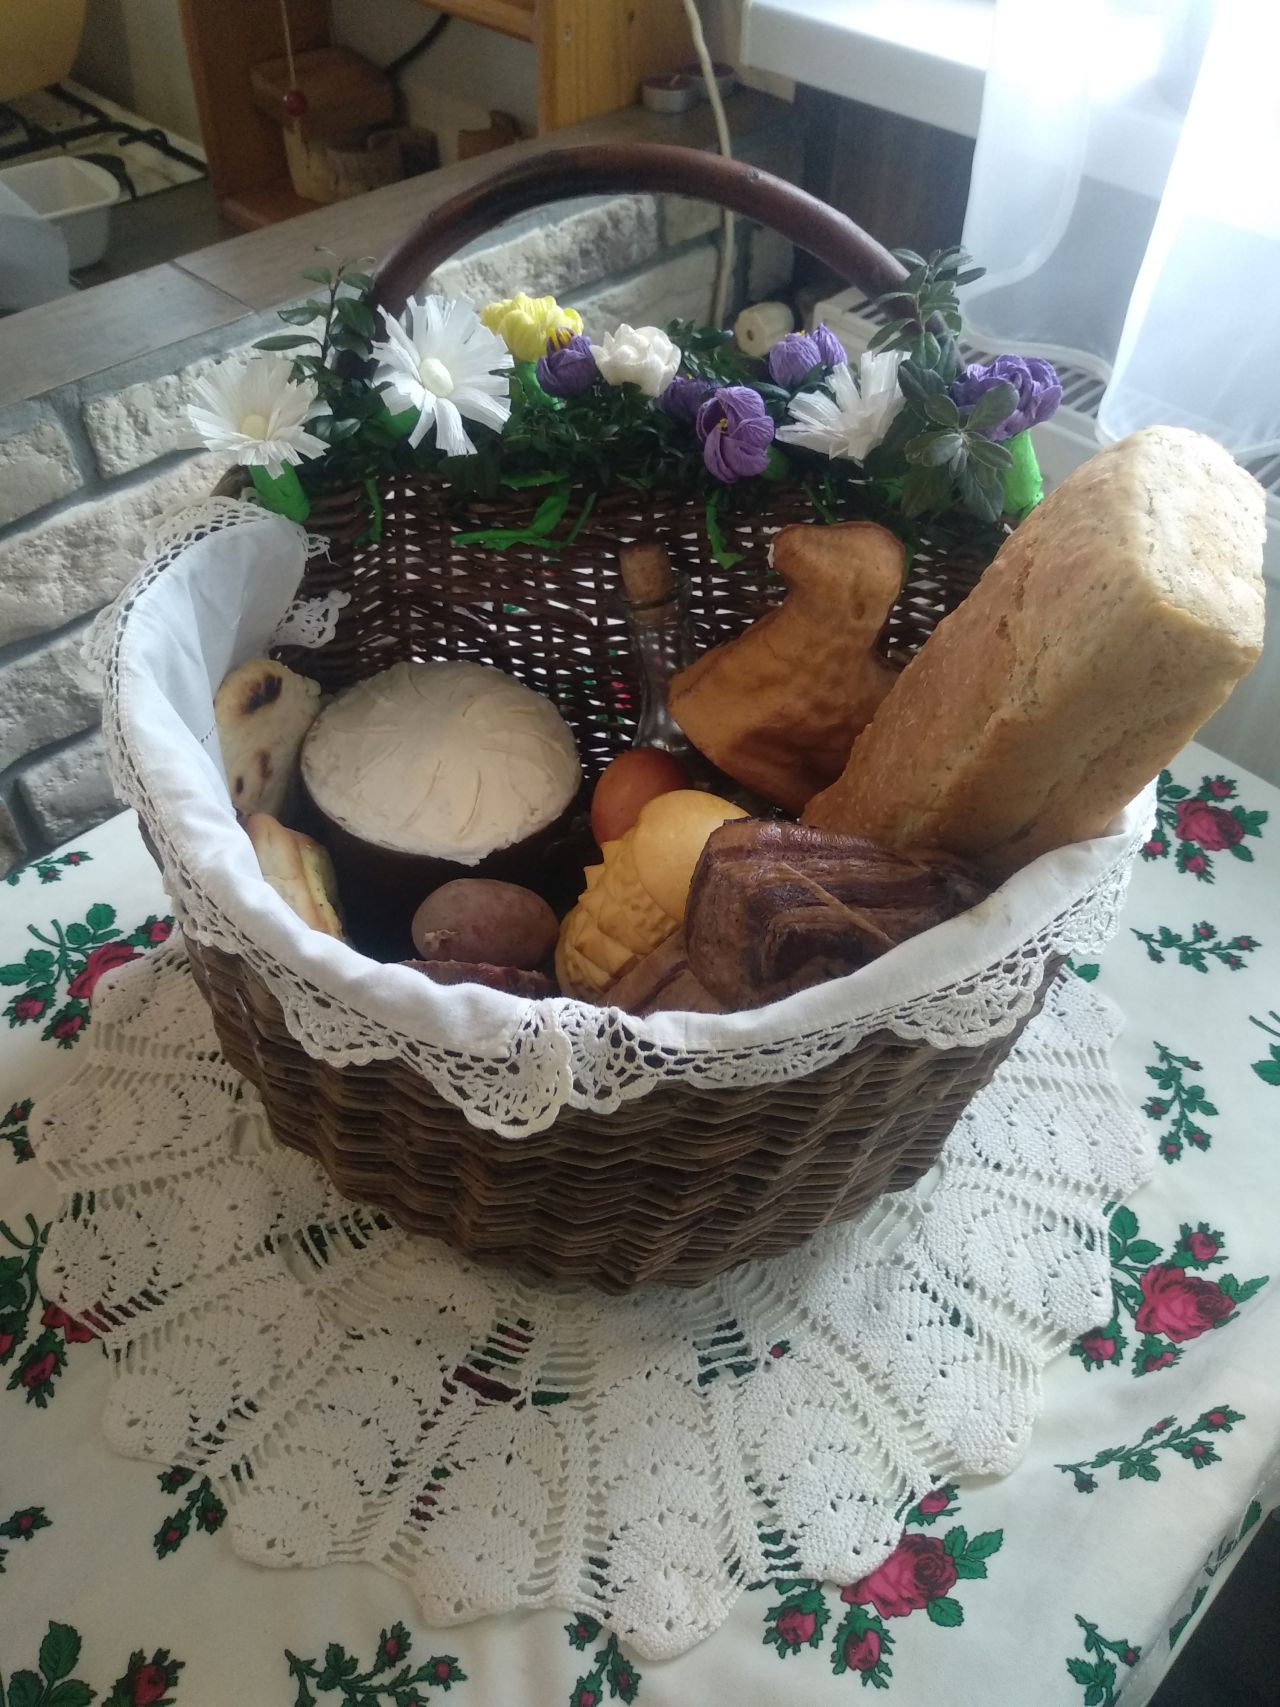 wiklinowy koszyk z białą serwetą, w środku chleb z formy, sery, jajko barwione na ciemnoczerwono, wędliny i inne wiktuały, szklana butelka z korkiem, całość przystrojona zielonymi gałązkami oraz białymi i fioletowymi kwiatami 